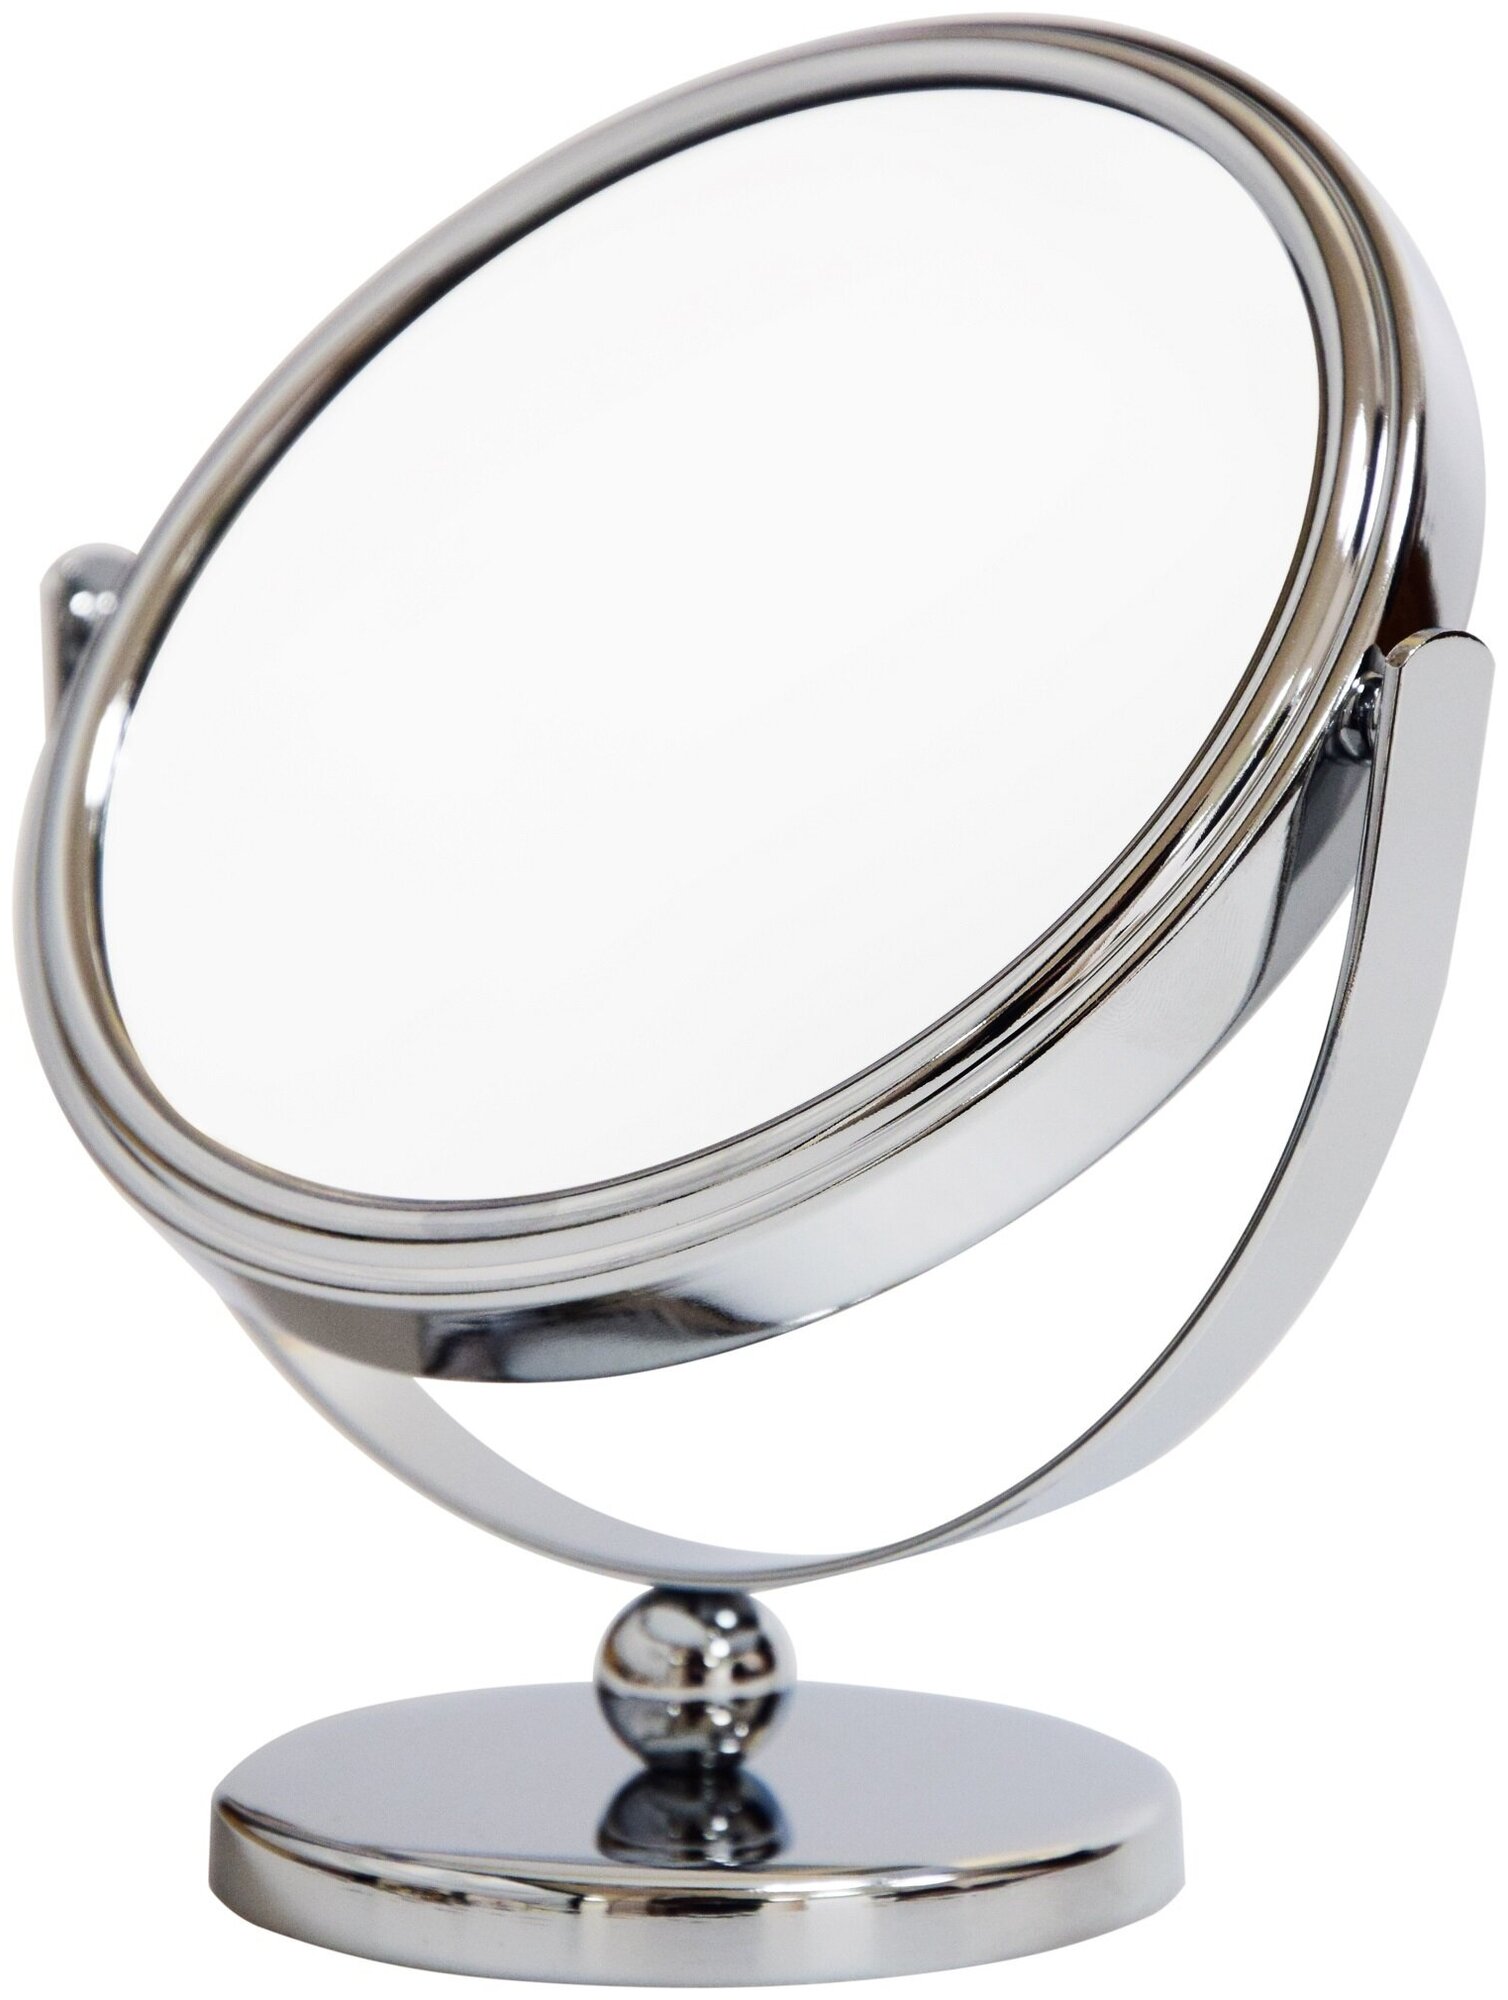 Зеркало косметическое 2-х стороннее увеличительное диаметр 12.5 см на ножке